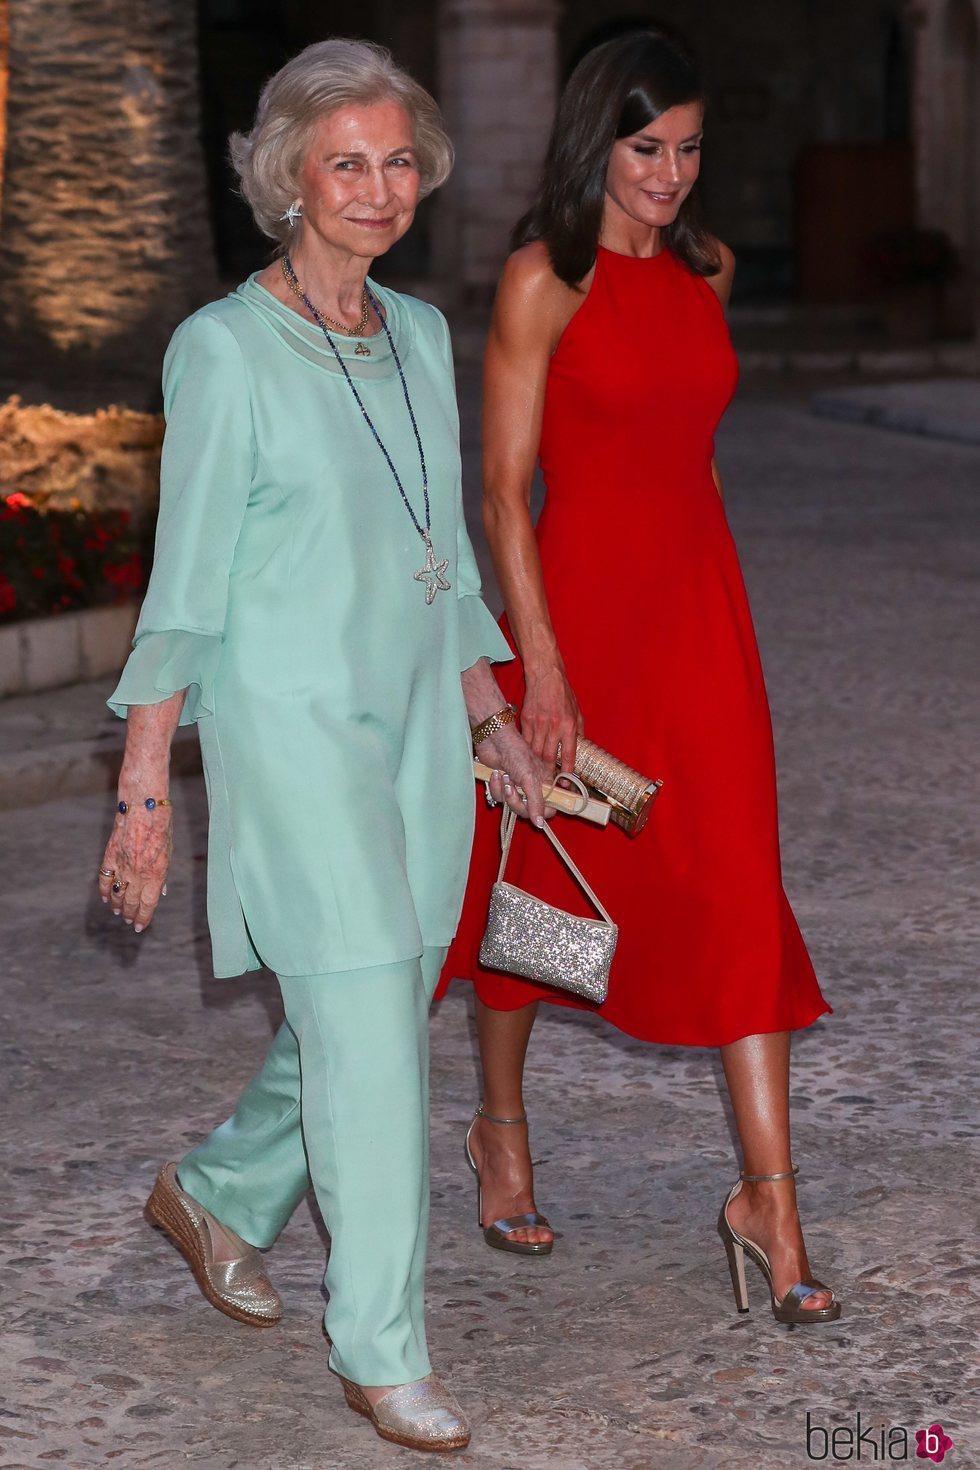 La Reina Letizia y la Reina Sofía, muy cómplices en la recepción del Palacio de la Almudaina en Mallorca del verano 2019